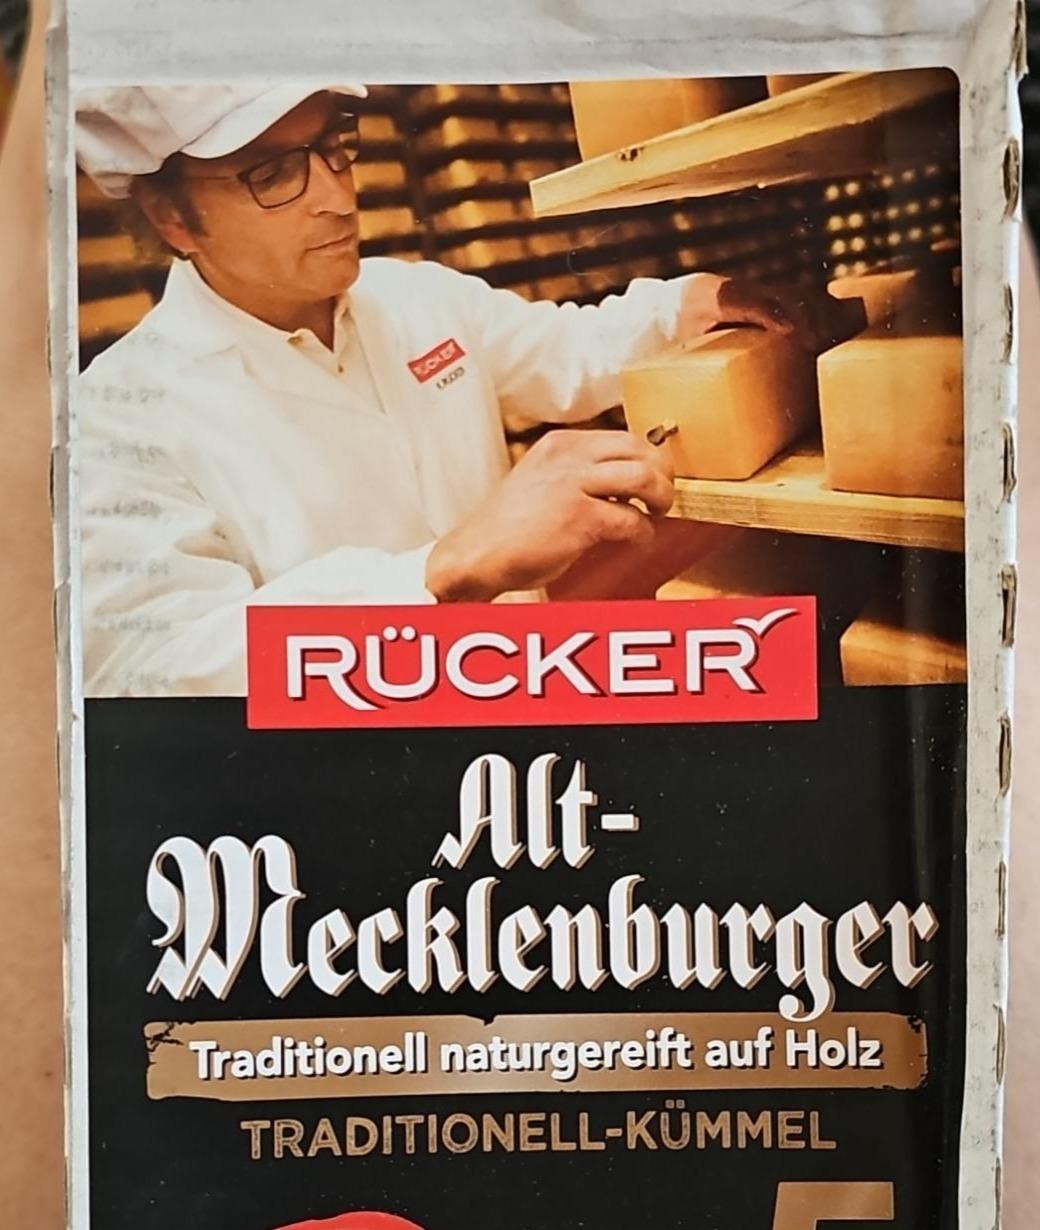 Fotografie - Alt-mecklenburger traditionell - kümmel Rücker